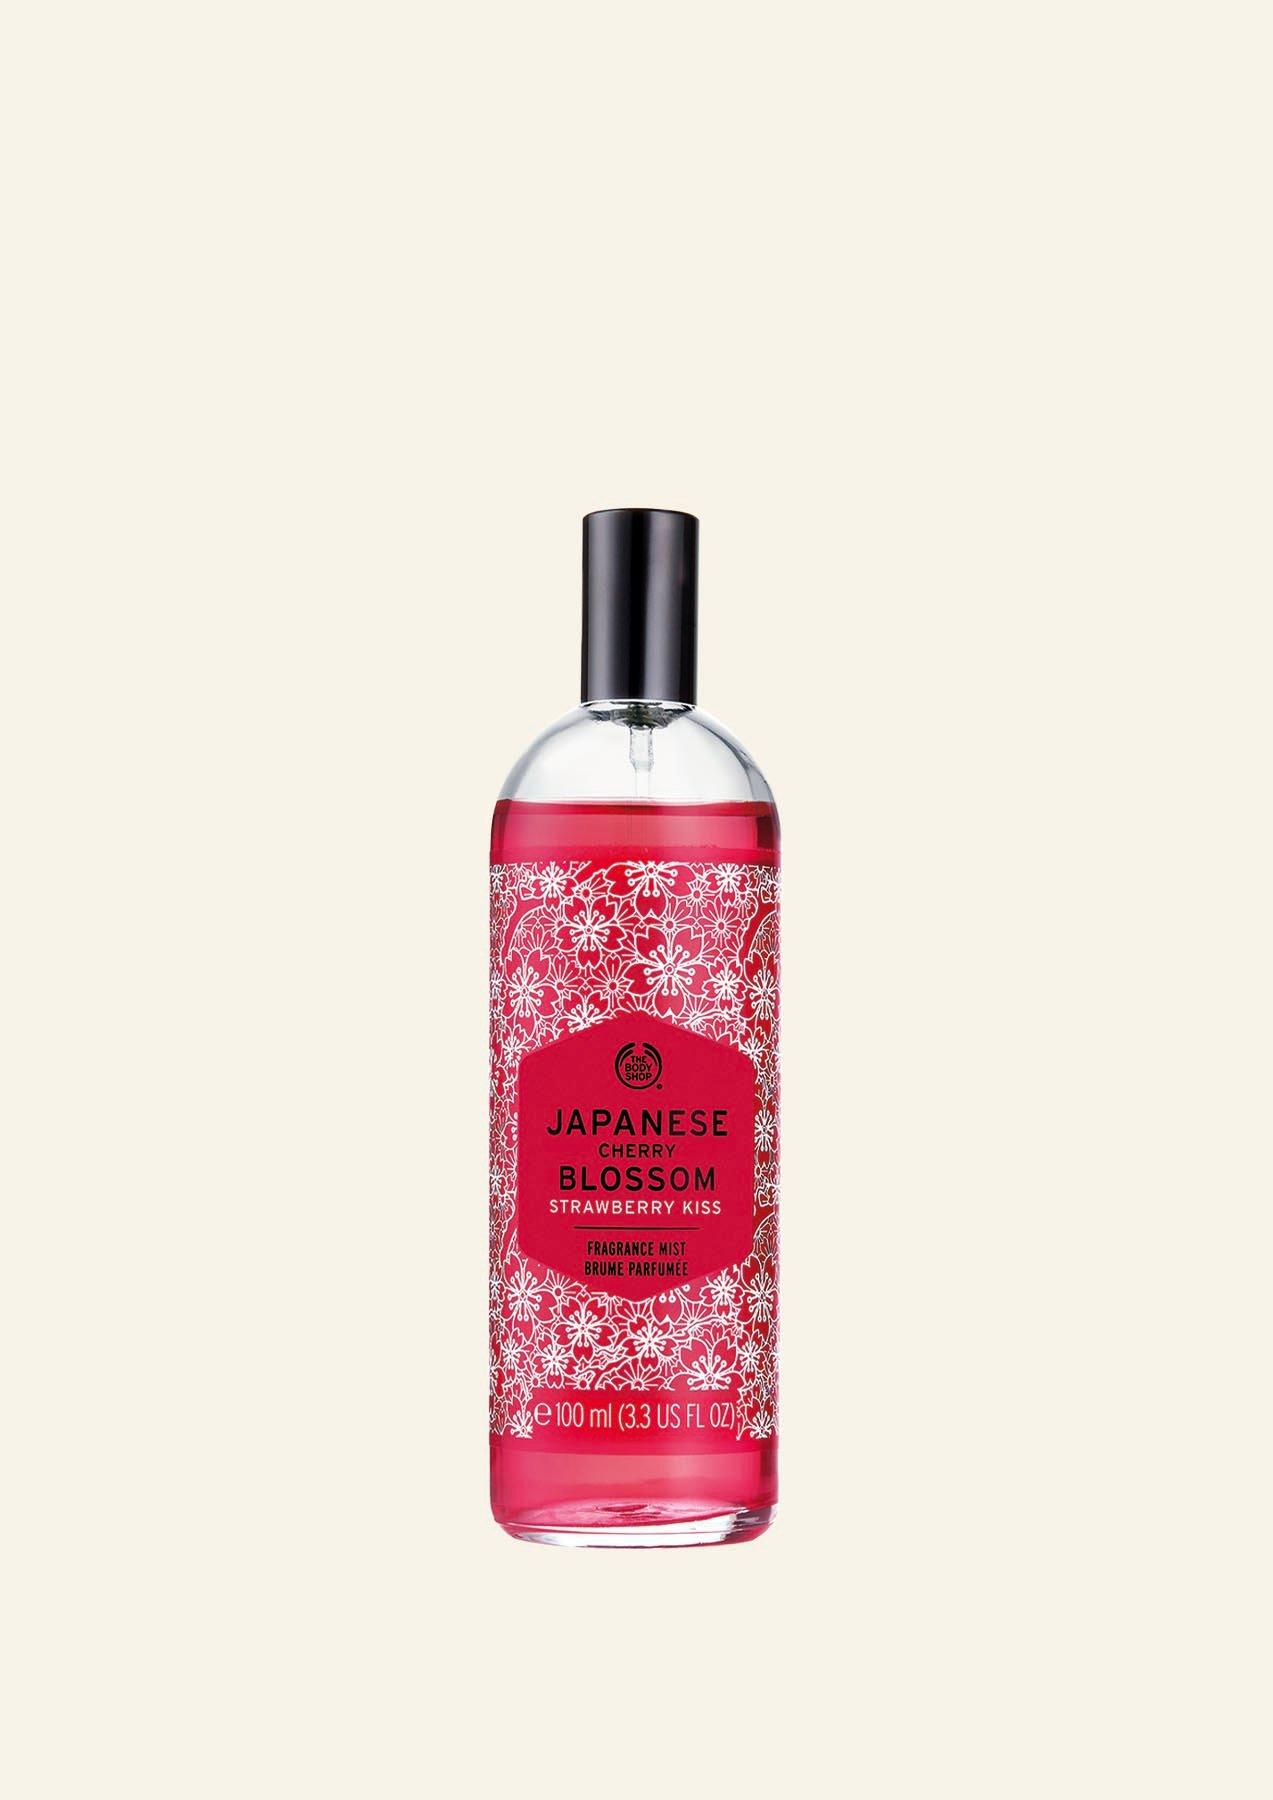 Japanese Cherry Blossom | Fragrance 